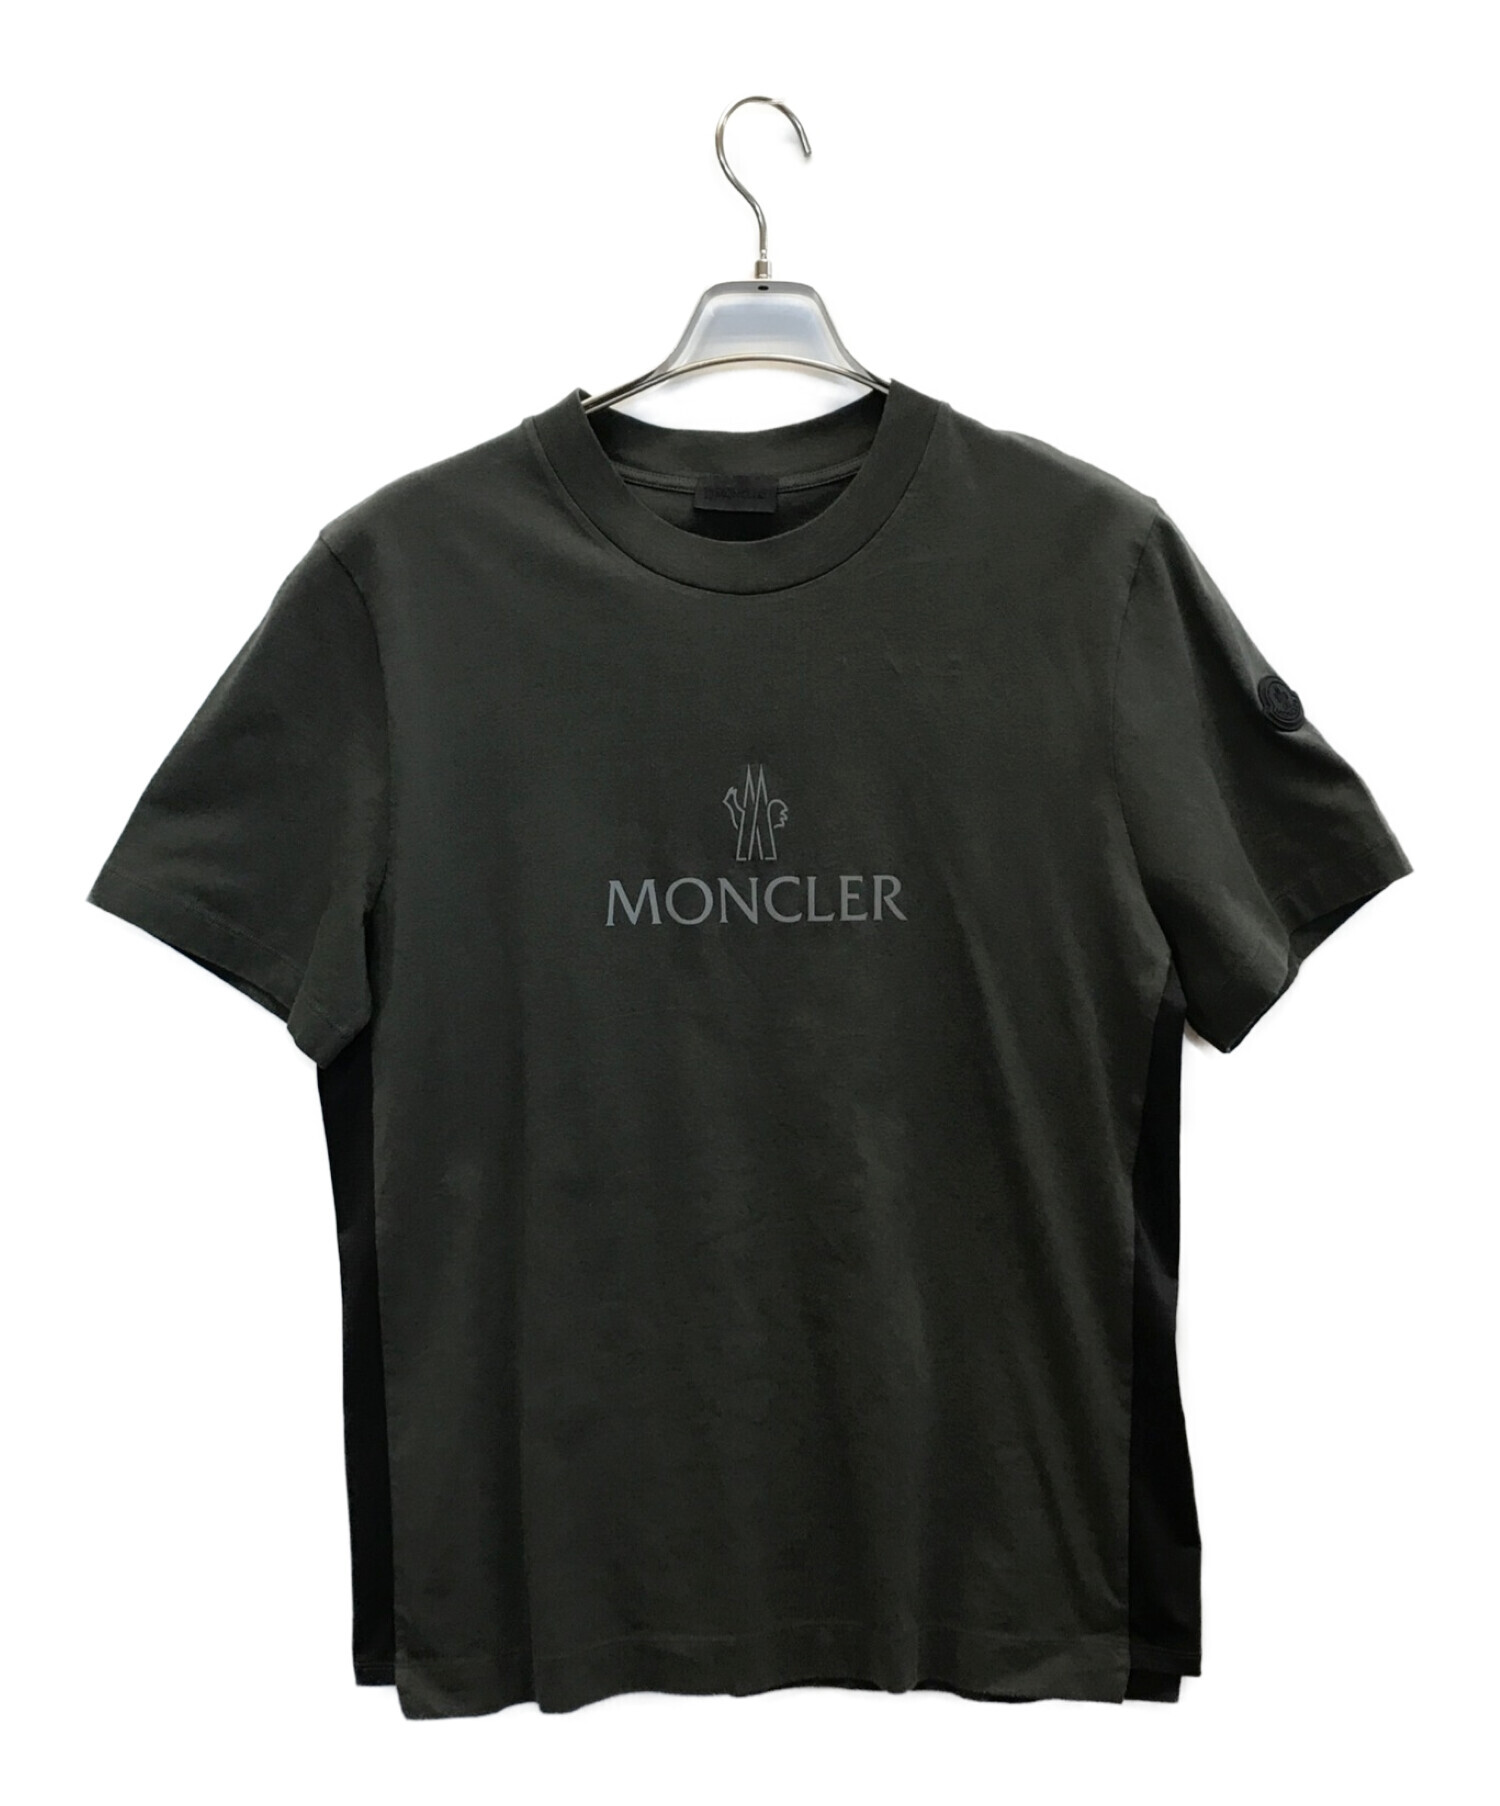 MONCLER (モンクレール) ロゴプリントTシャツ カーキ サイズ:M